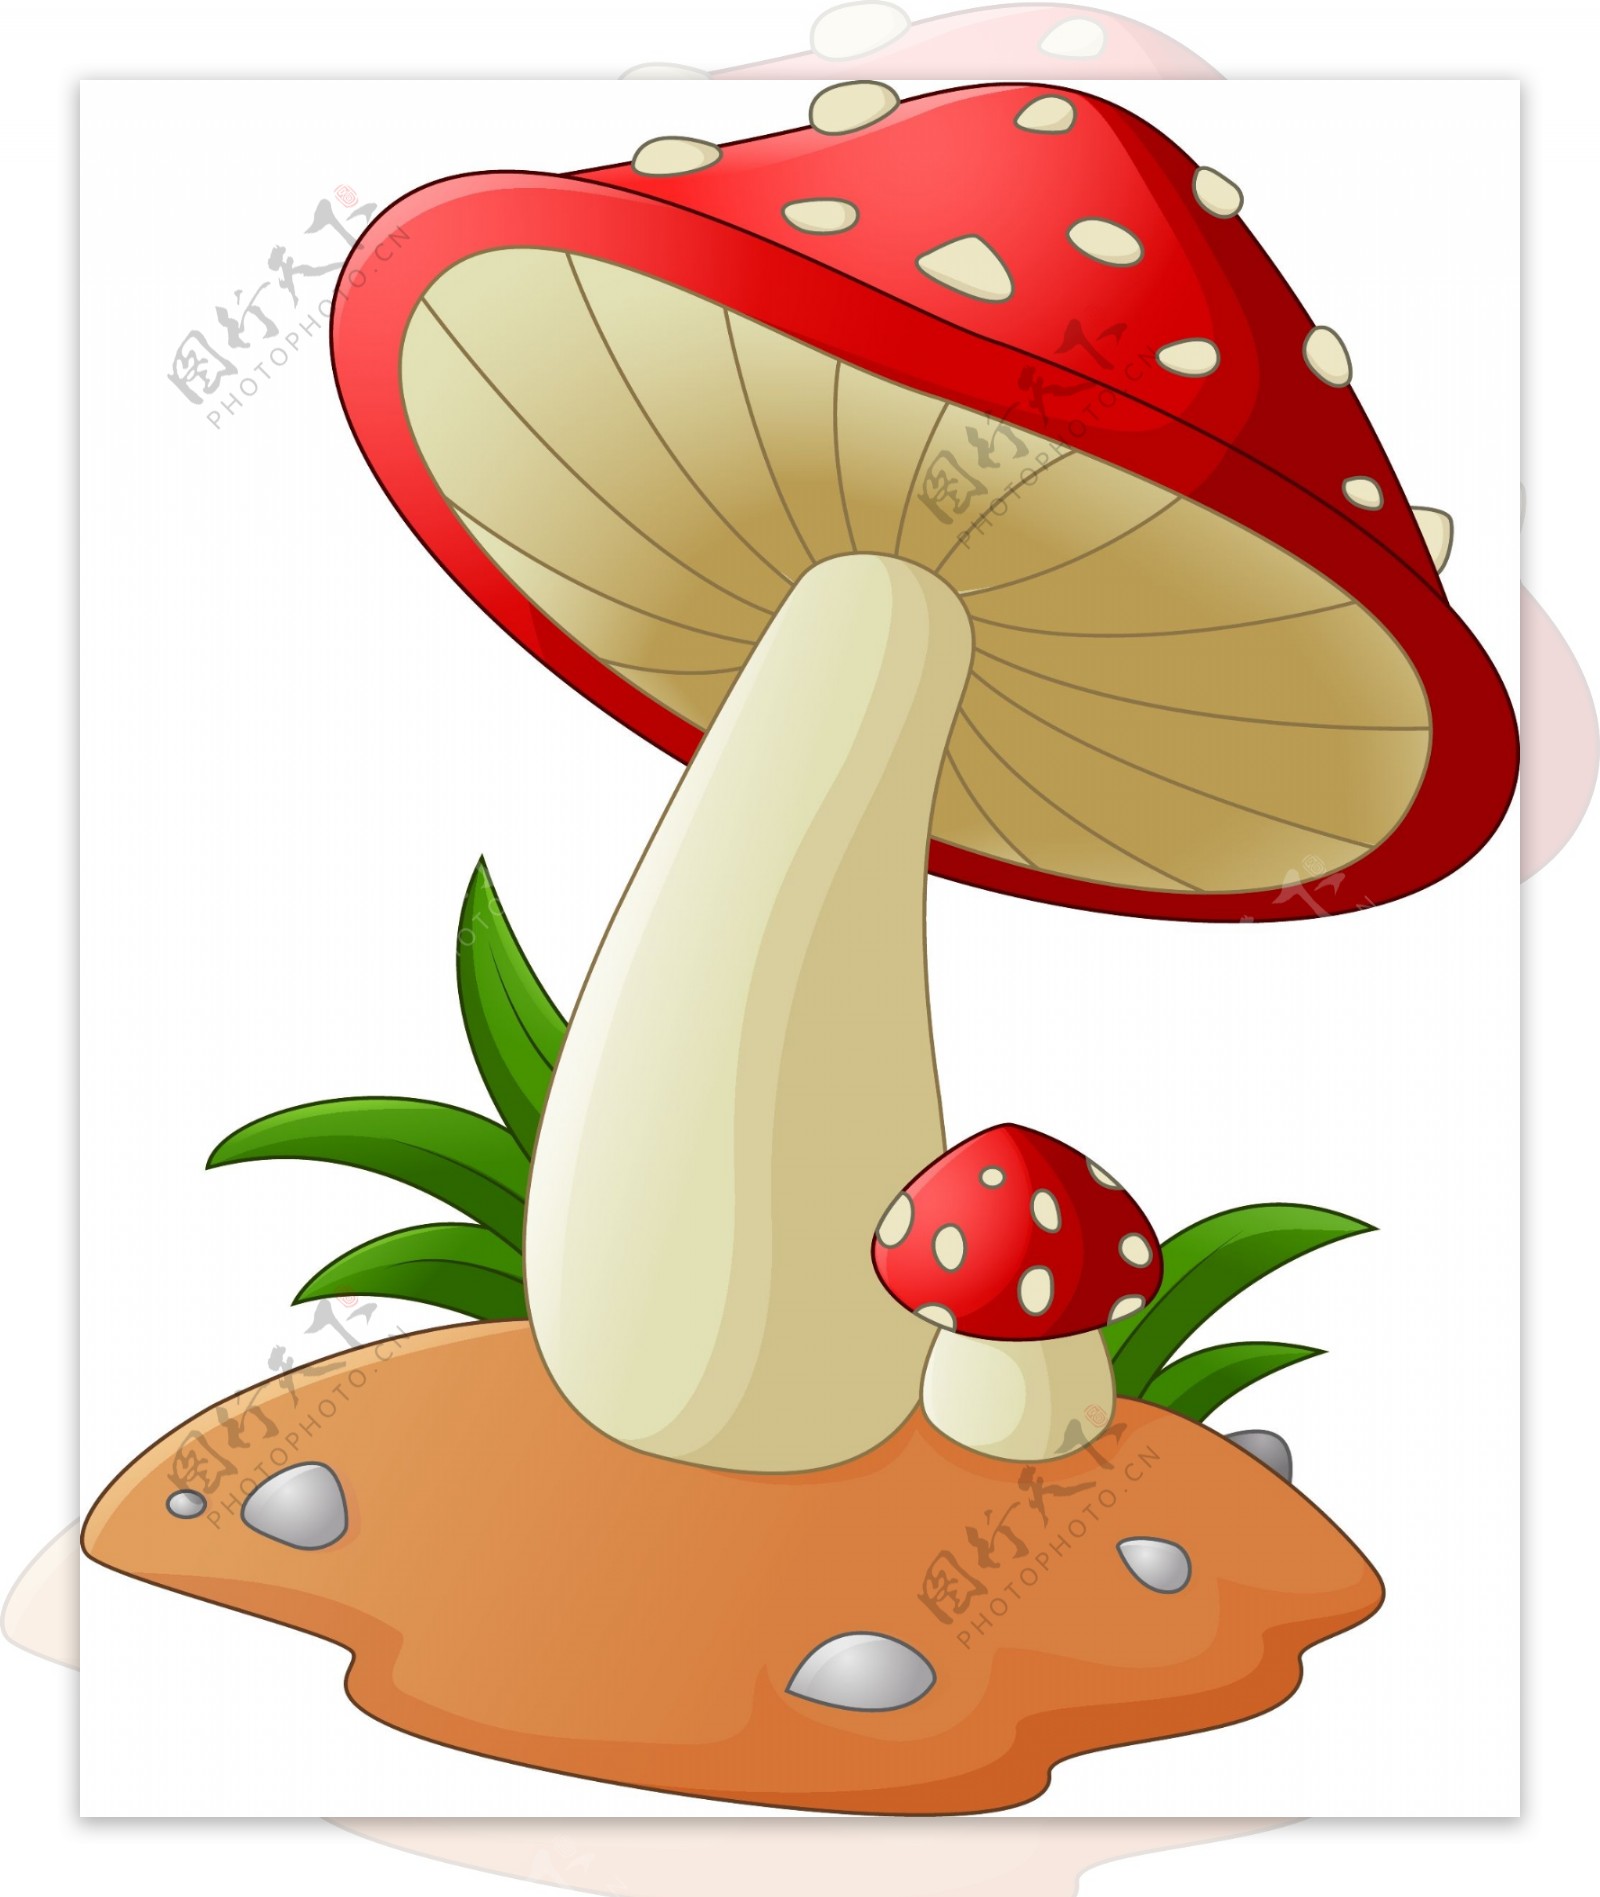 土地上的红色卡通蘑菇矢量素材